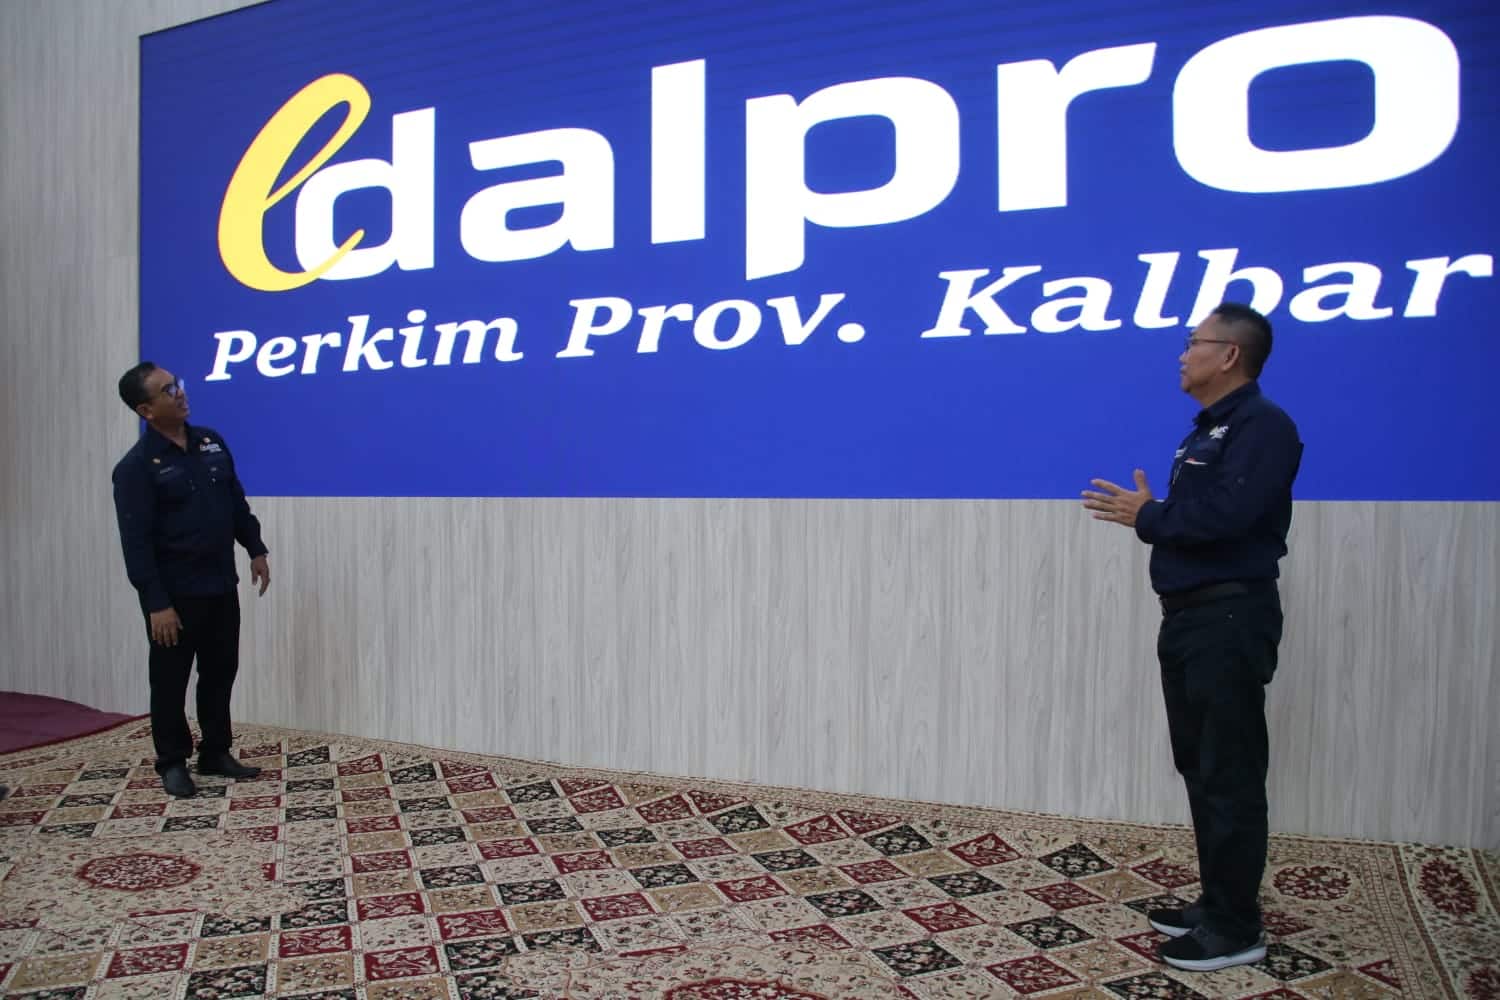 Plh Sekretaris Daerah Provinsi Kalbar, Alfian Salam didampingi Kepala Dinas Perkim Kalbar, Yosafat Triadhi Andjioe meluncurkan aplikasi e-Dalpro, aplikasi berbasis elektronik, inovasi yang dilahirkan Dinas Perkim Kalbar. (Foto: Biro Adpim Kalbar)